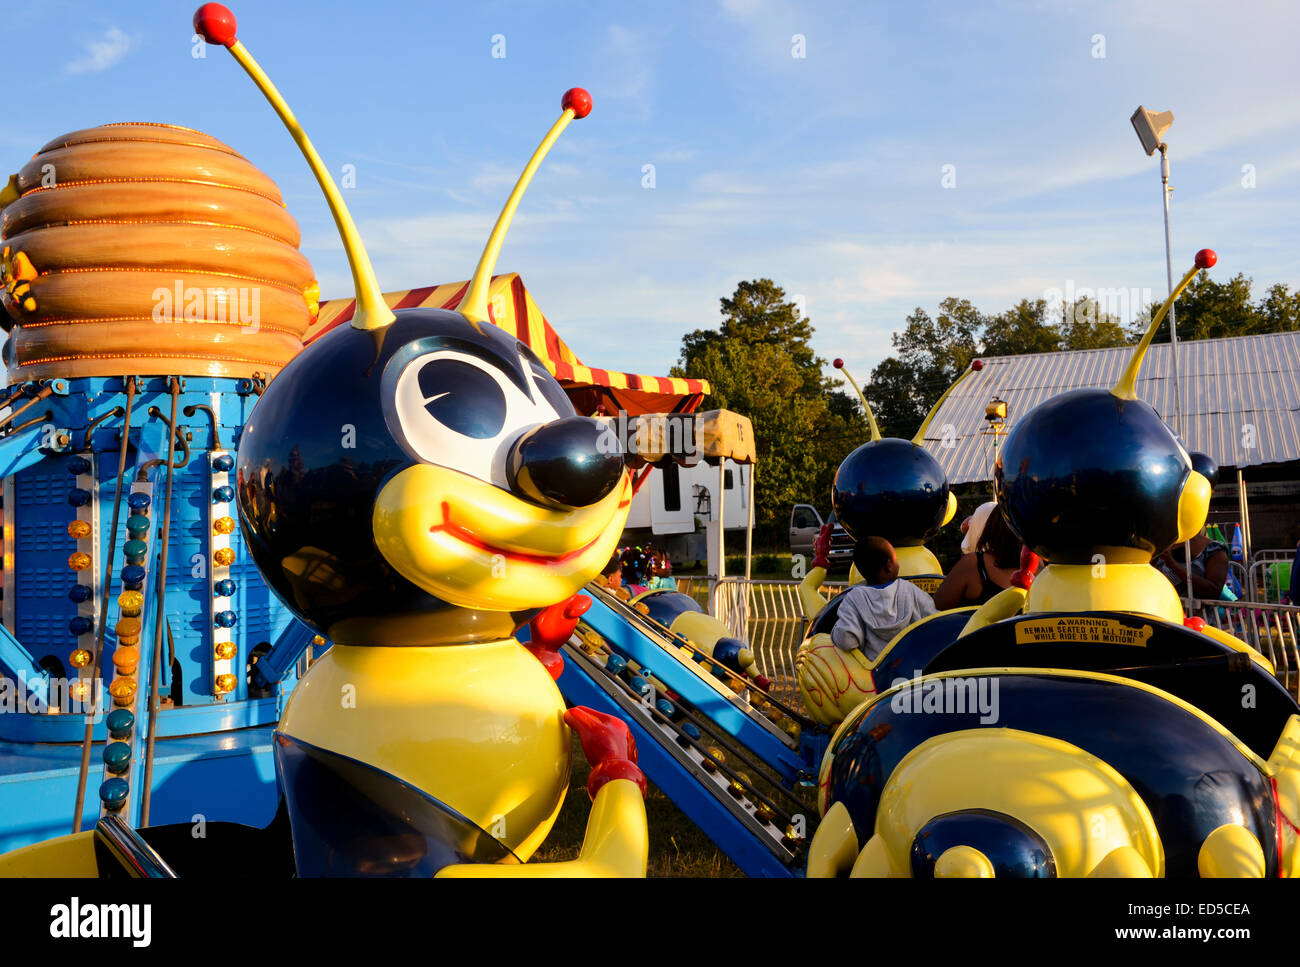 Carnival rides at the Moore County Fair, Carthage, North Carolina Stock